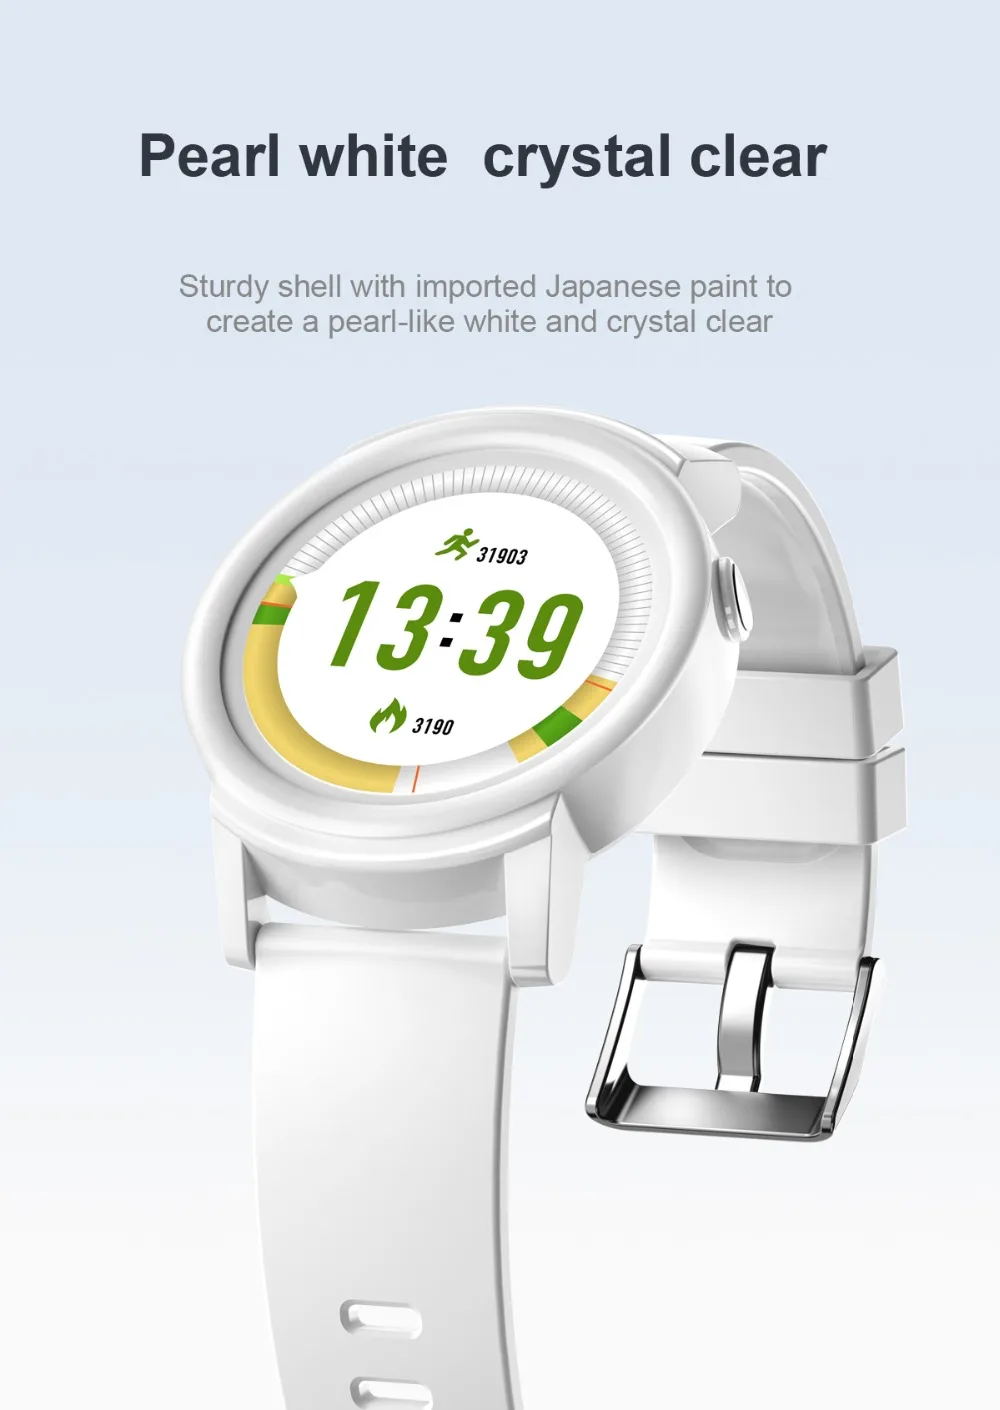 696 DK02 Smartwatch Для женщин круглый Экран полный Дисплей монитор сердечного ритма Фитнес трекер Smart часы Для мужчин для IOS и Android